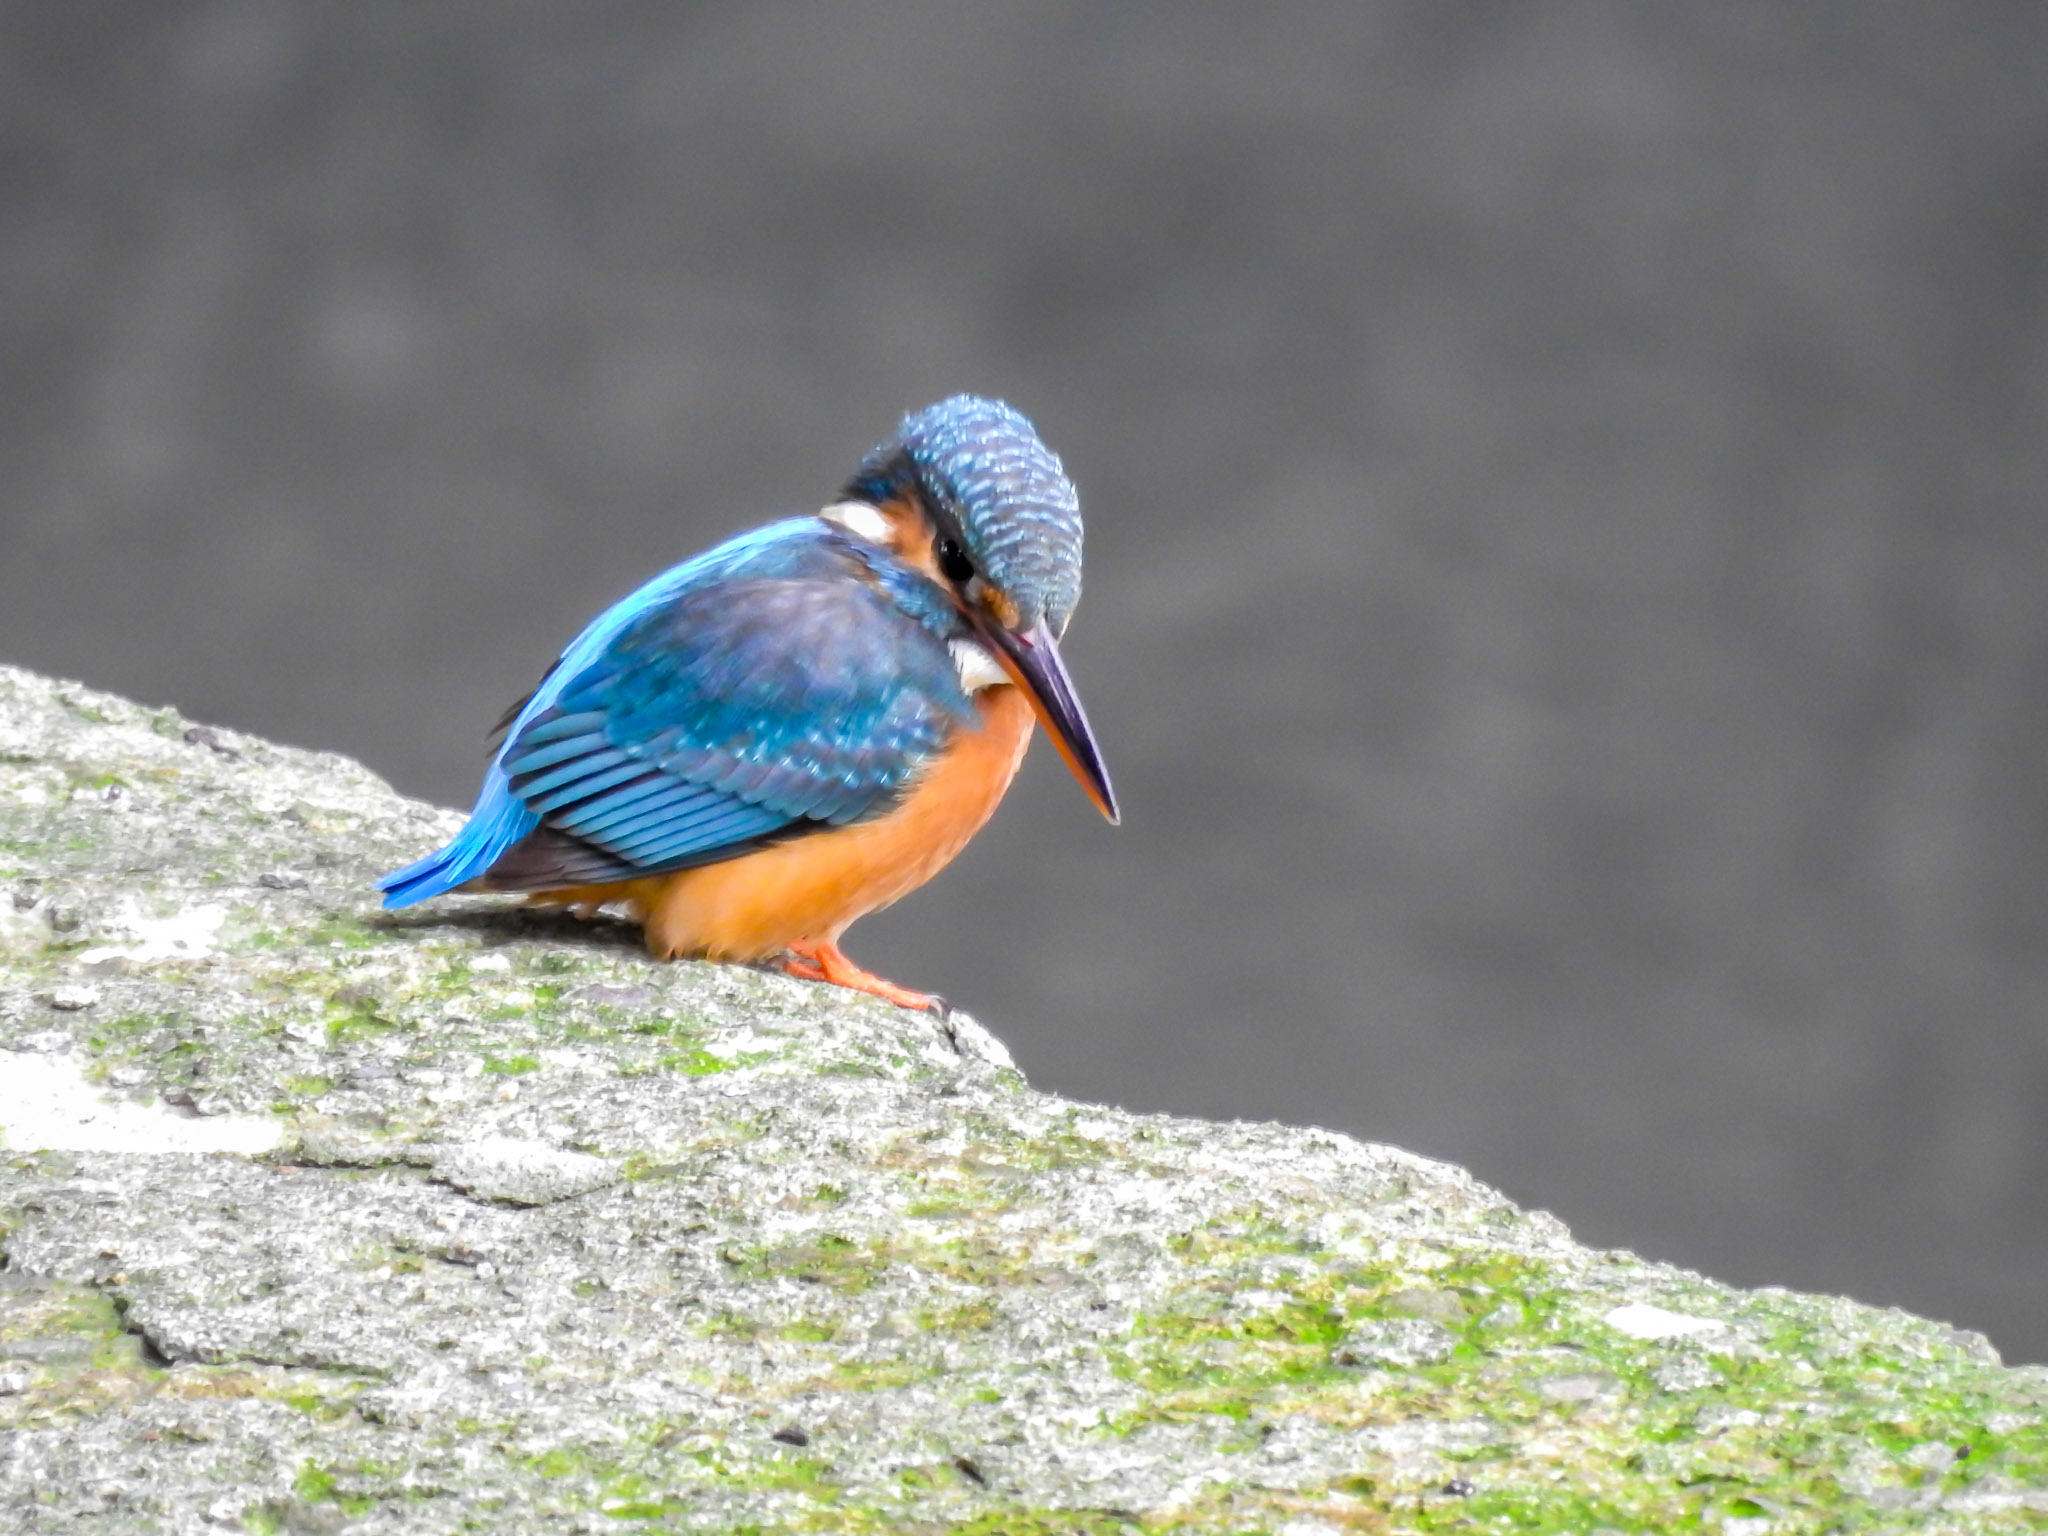  溪流中的藍寶石-翠鳥現在也成為湳仔溝常駐鳥類